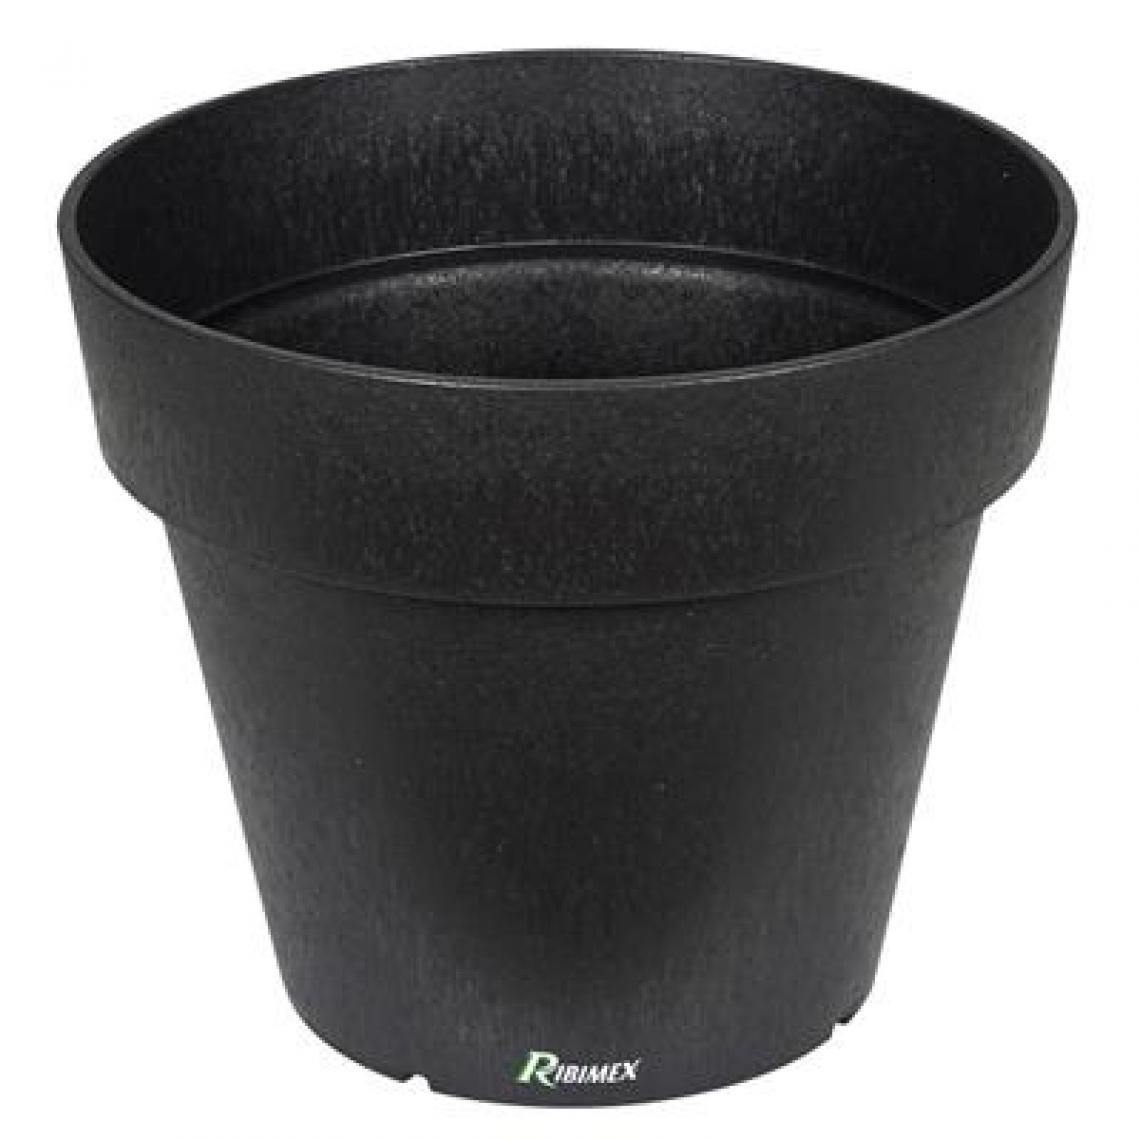 Ribimex - Pot 'fosca' diamètre 35cm hauteur 30cm gris en caoutchouc recyclé - Pots, cache-pots